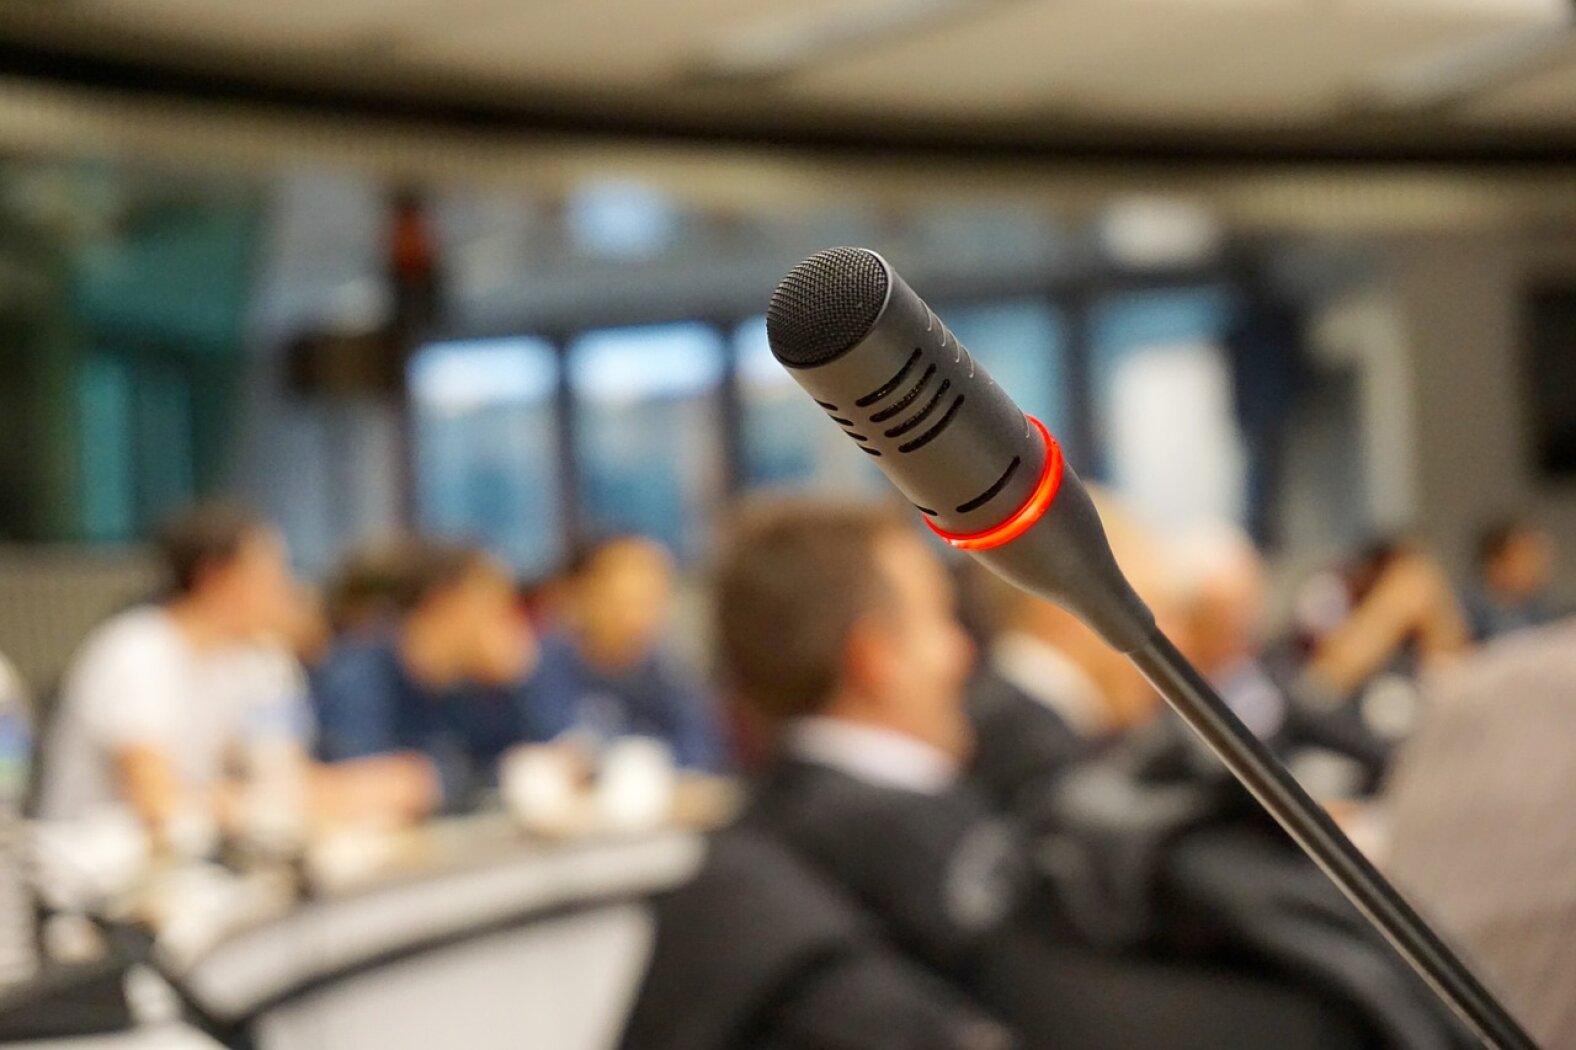 Kazlų Rūdos savivaldybės šeštojo šaukimo tarybos trisdešimt ketvirtojo posėdžio, vyksiančio 2021 m. liepos 9 d. 9 val., darbotvarkės tvirtinimo